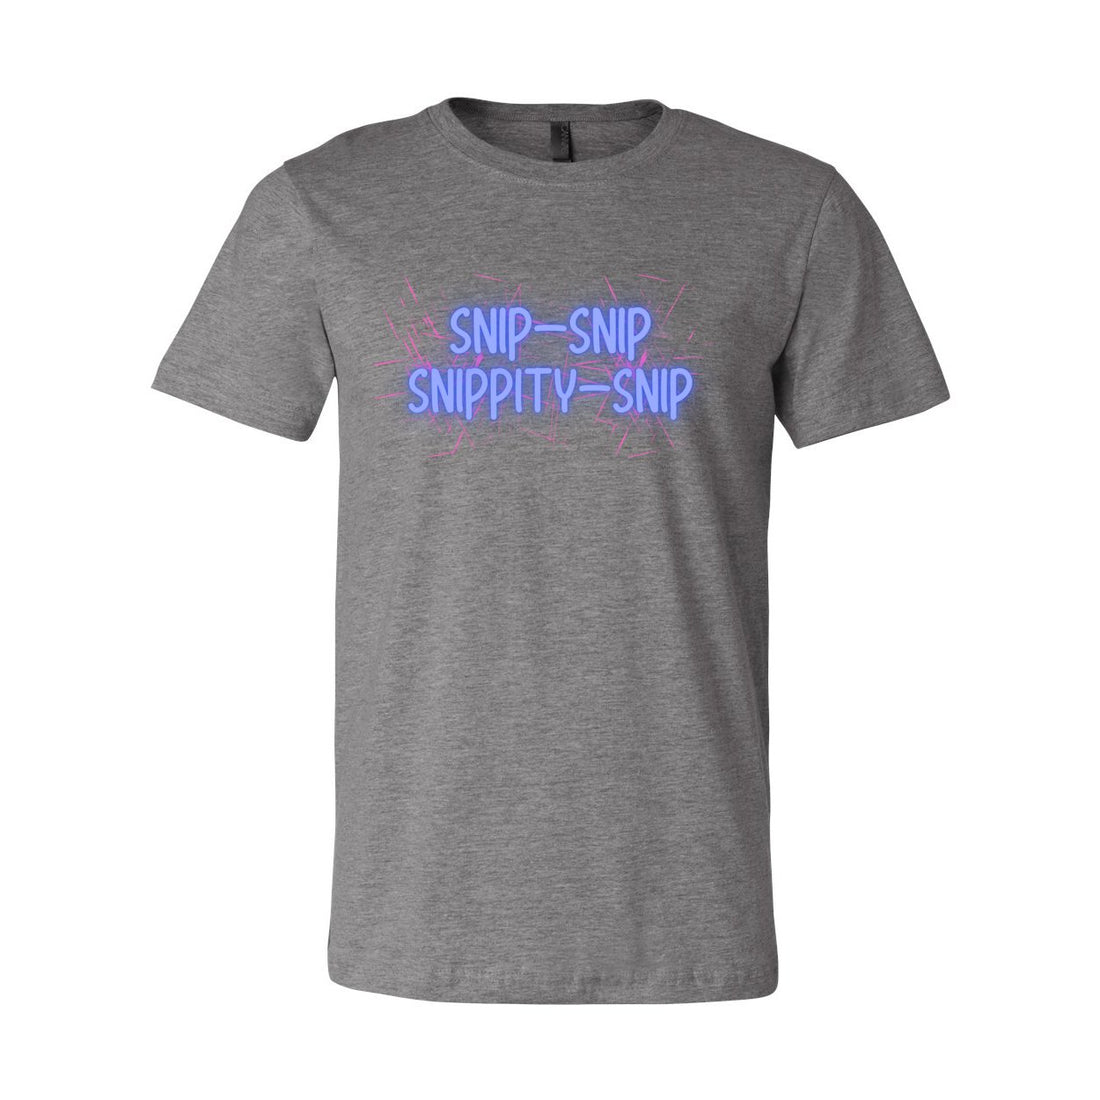 Snip Snip Jersey Tee - T-Shirts - Positively Sassy - Snip Snip Jersey Tee